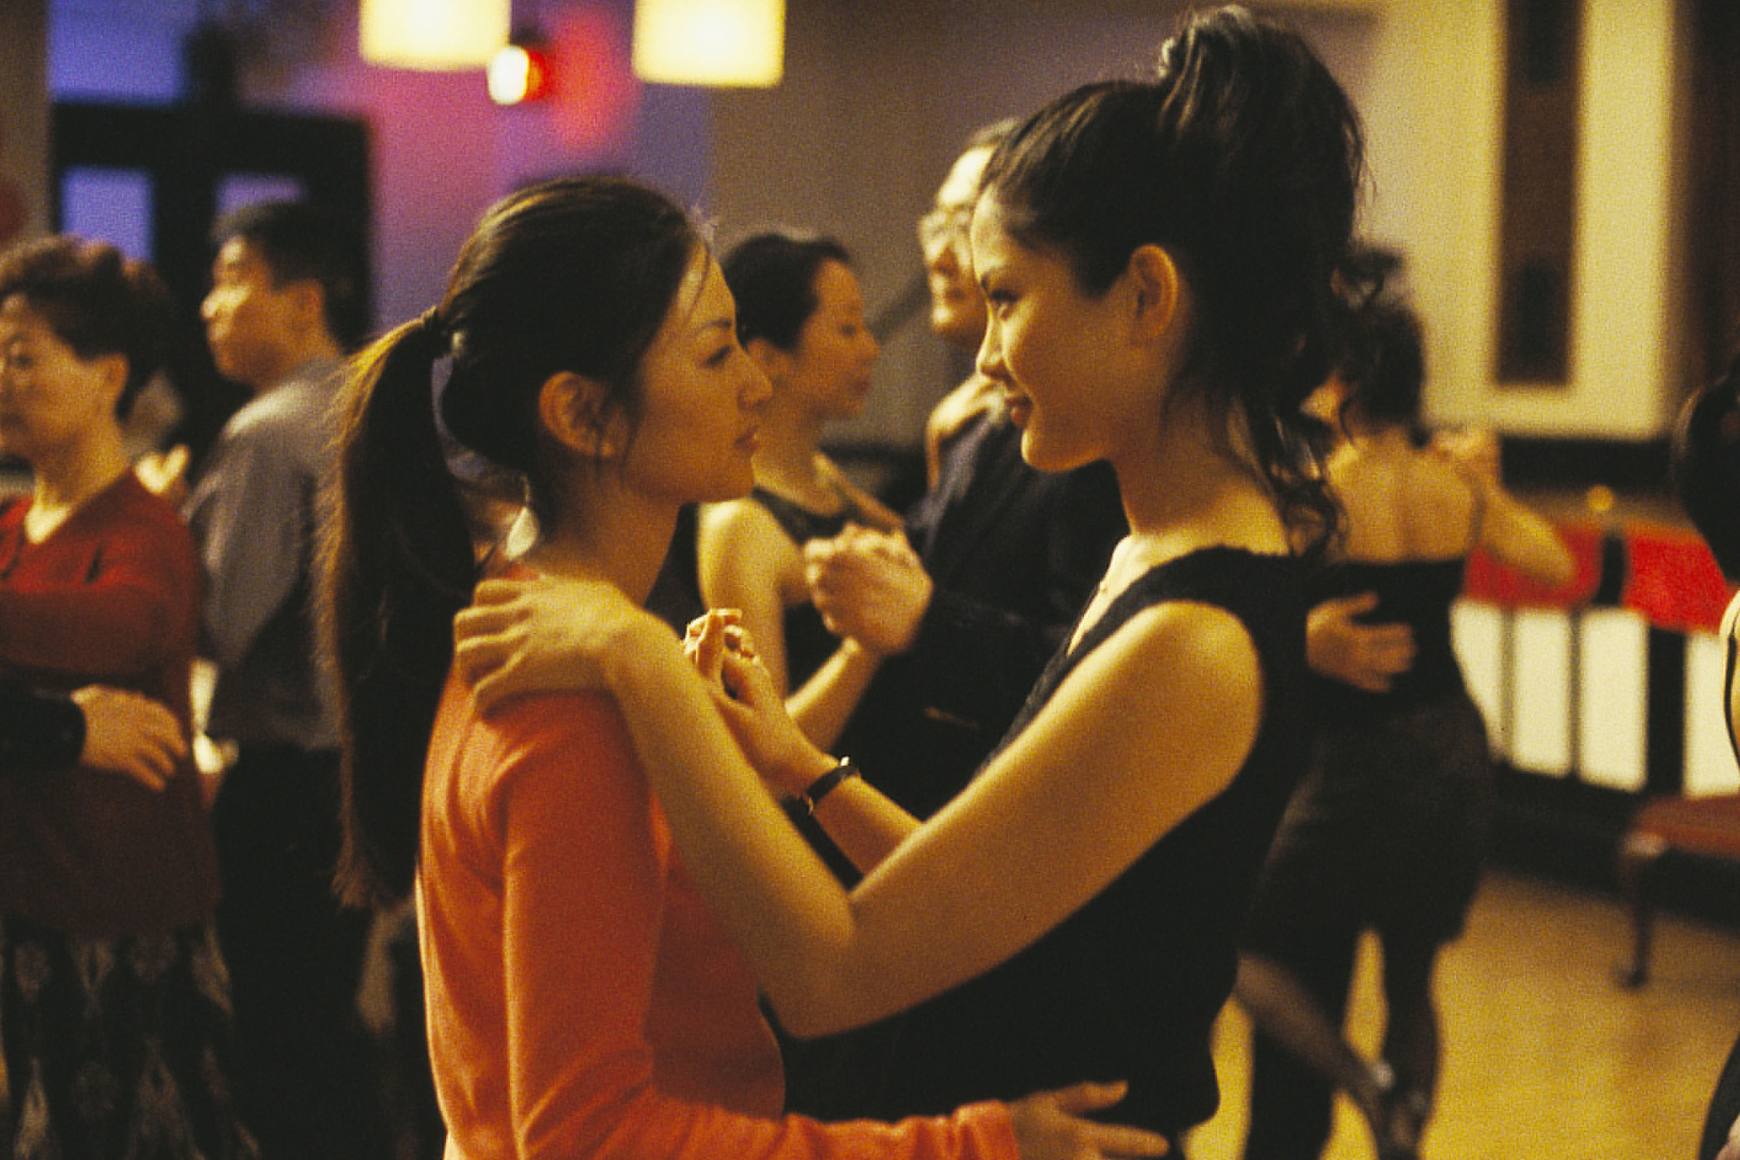 Michelle Krusiec y Lynn Chen bailan lentamente, mirándose a los ojos.